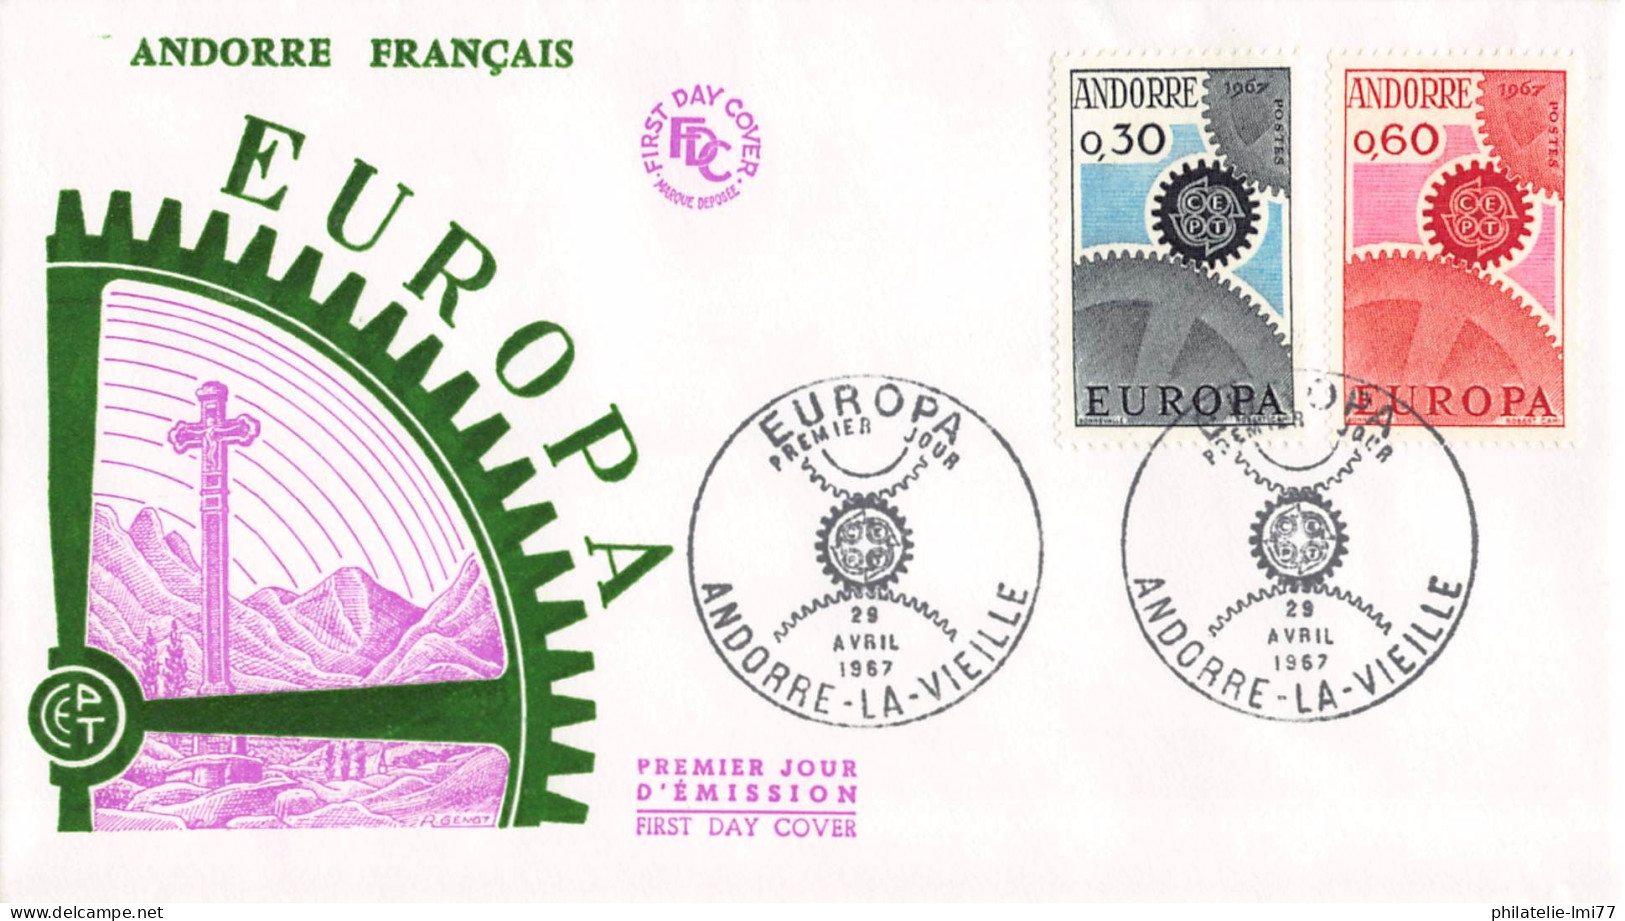 Andorre Français - FDC Europa 1967 - 1967